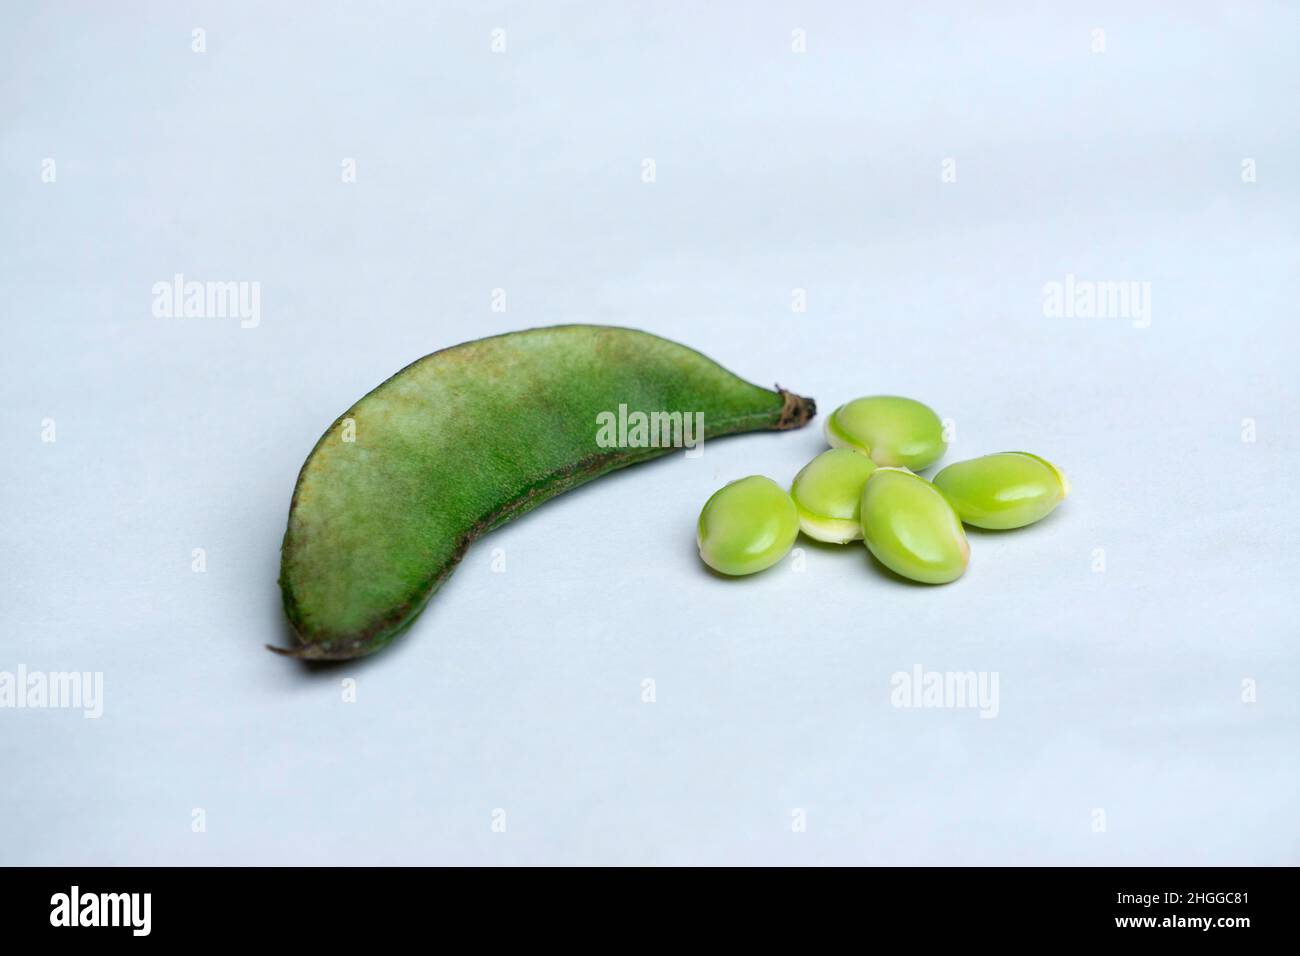 Lima beans vegetables in white background, Satara, Maharashtra, India Stock Photo